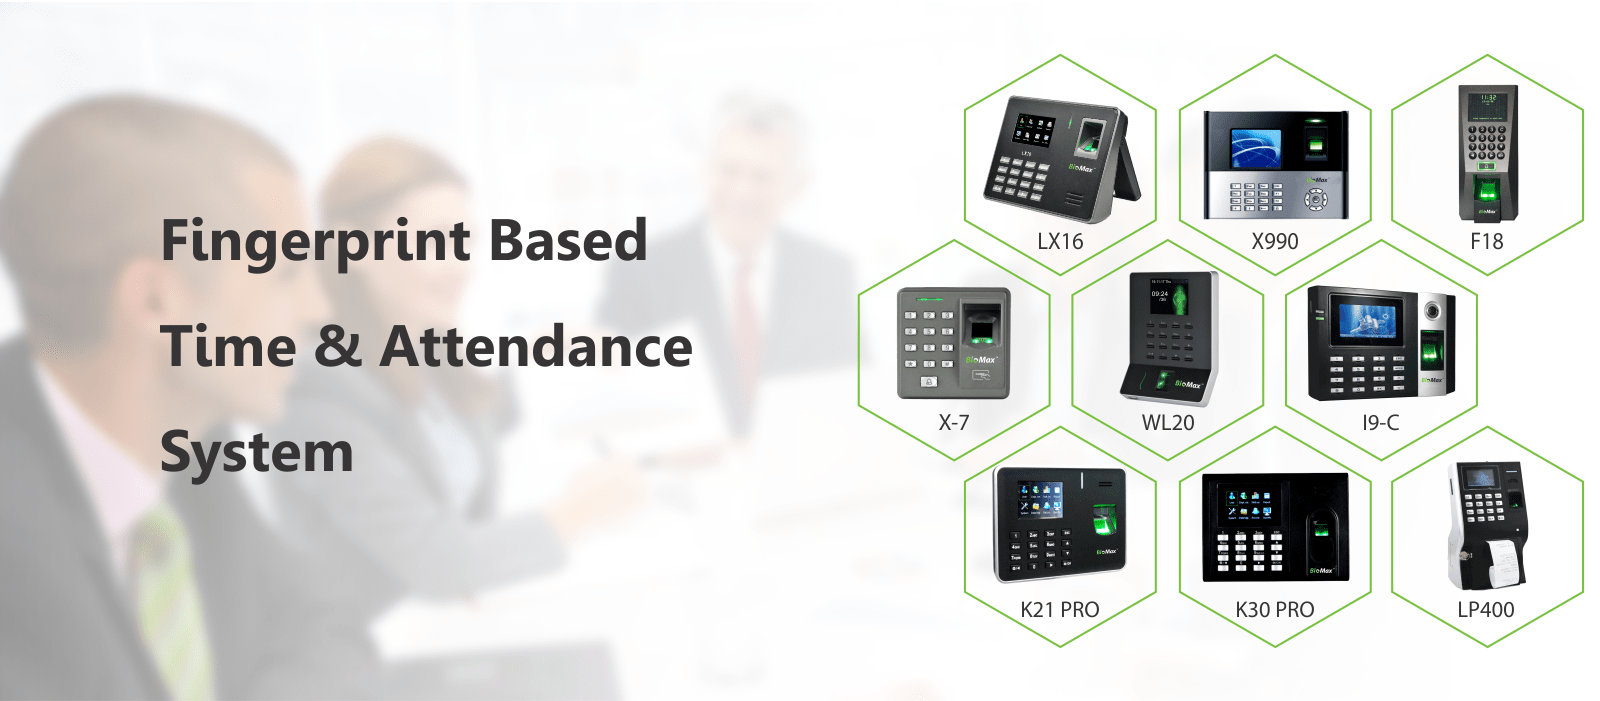 Fingerprint Based Time & Attendance System